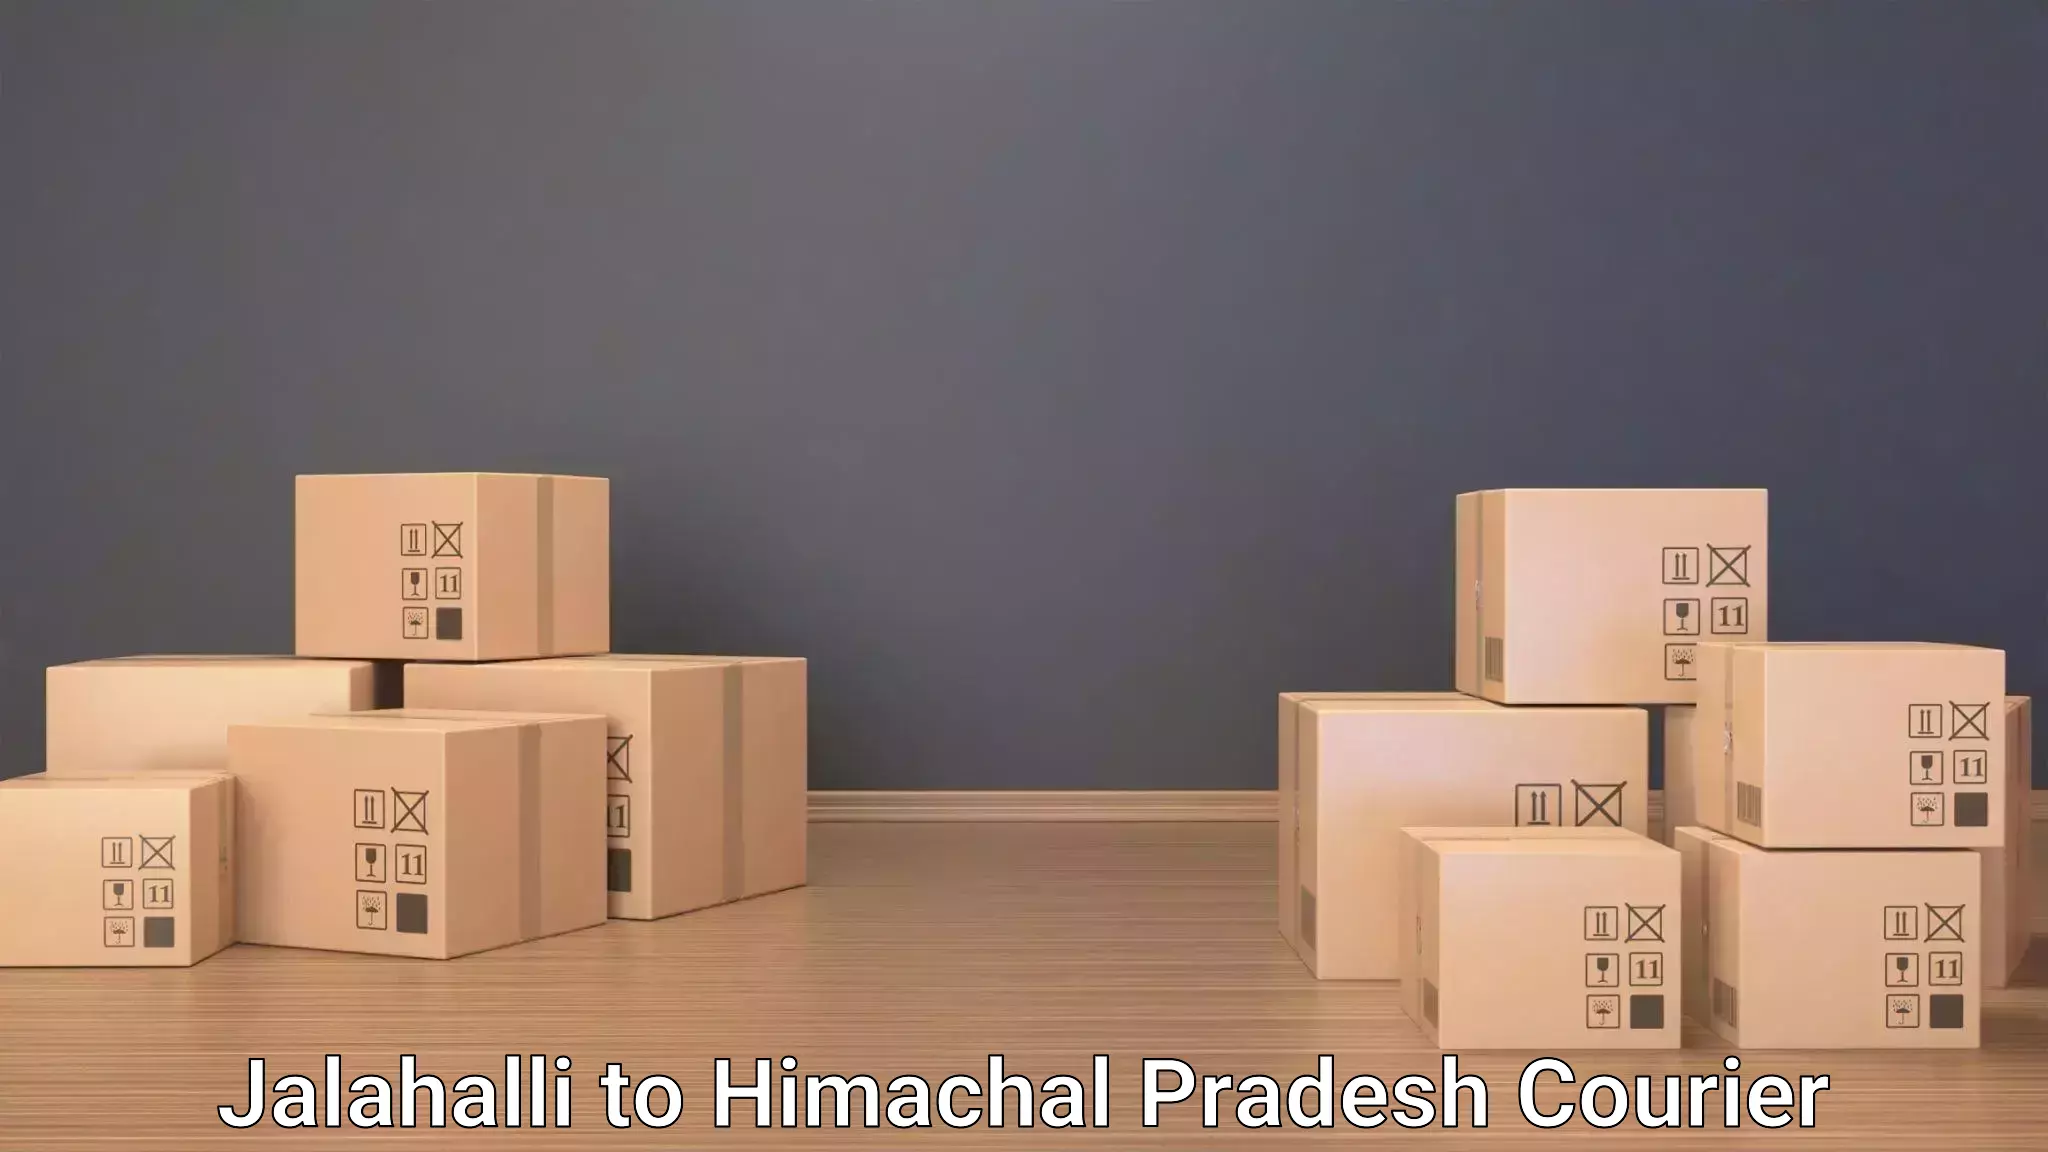 Luggage transit service Jalahalli to Himachal Pradesh